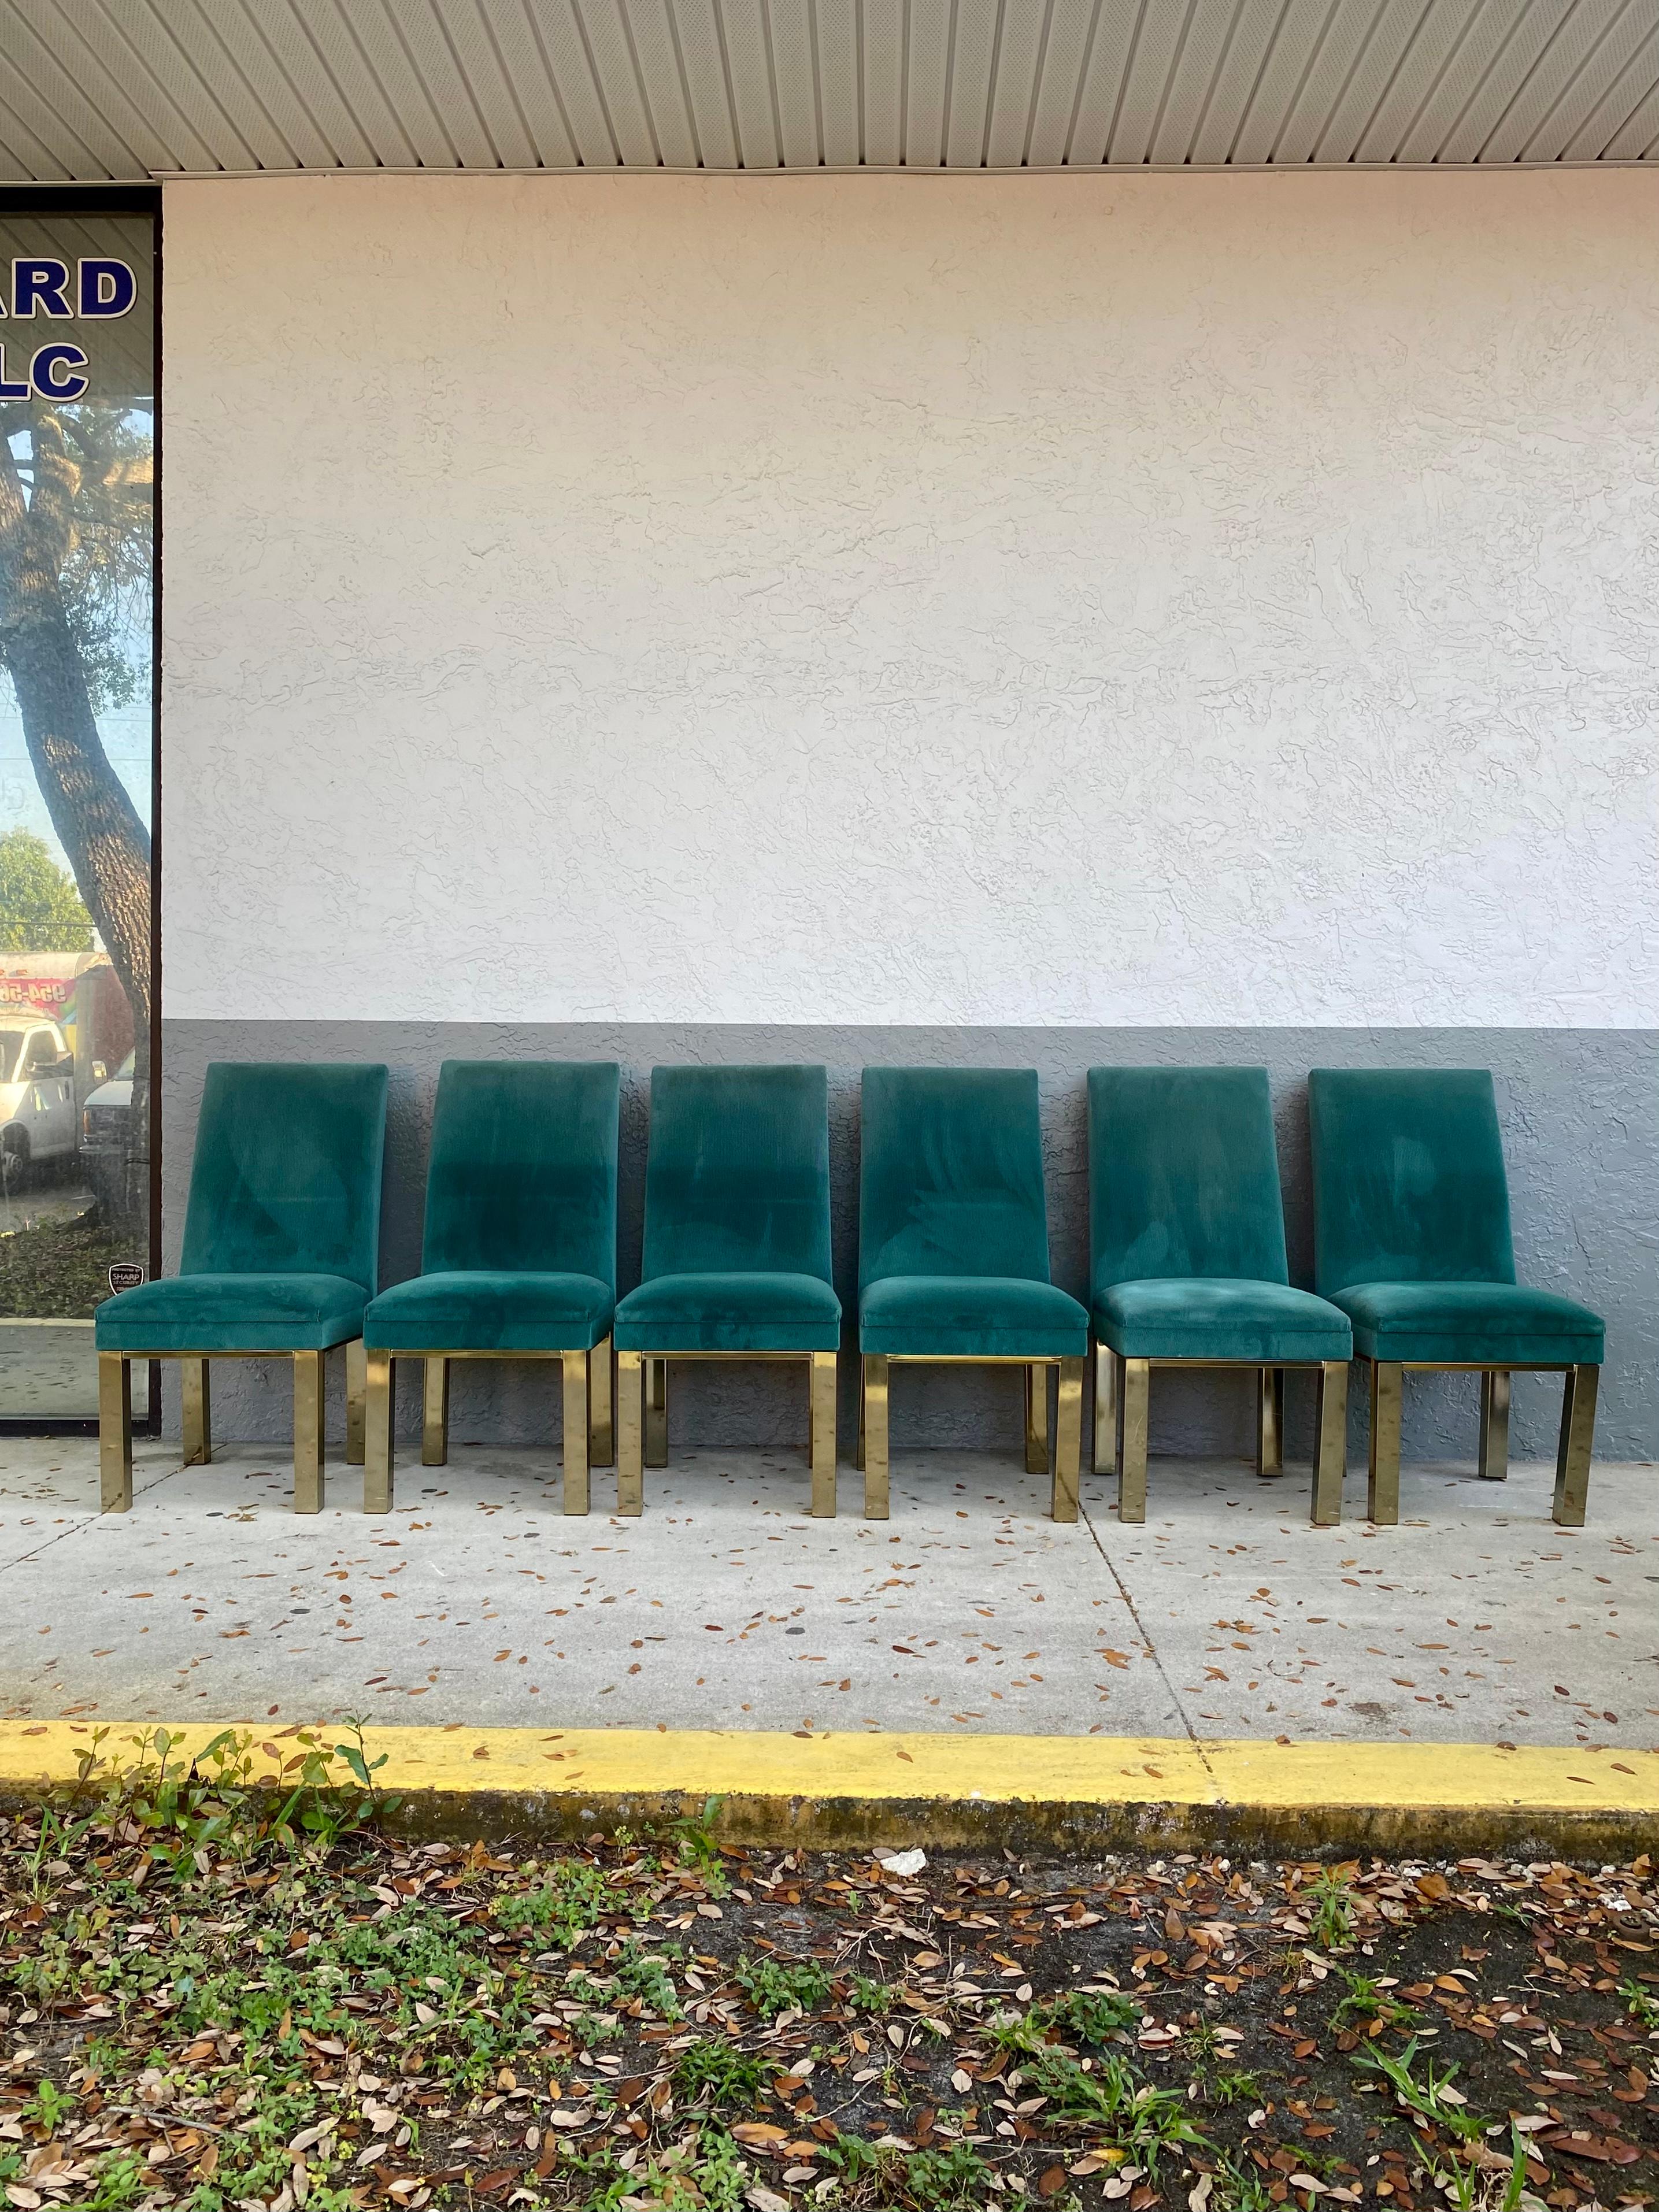 Ensemble de 6 chaises de salle à manger de style Parsons entièrement rembourrées, attribuées à Milo Baughman. Rembourré en chenille vert émeraude. Le design est remarquable partout. La forme classique est également dotée d'un dos confortable.